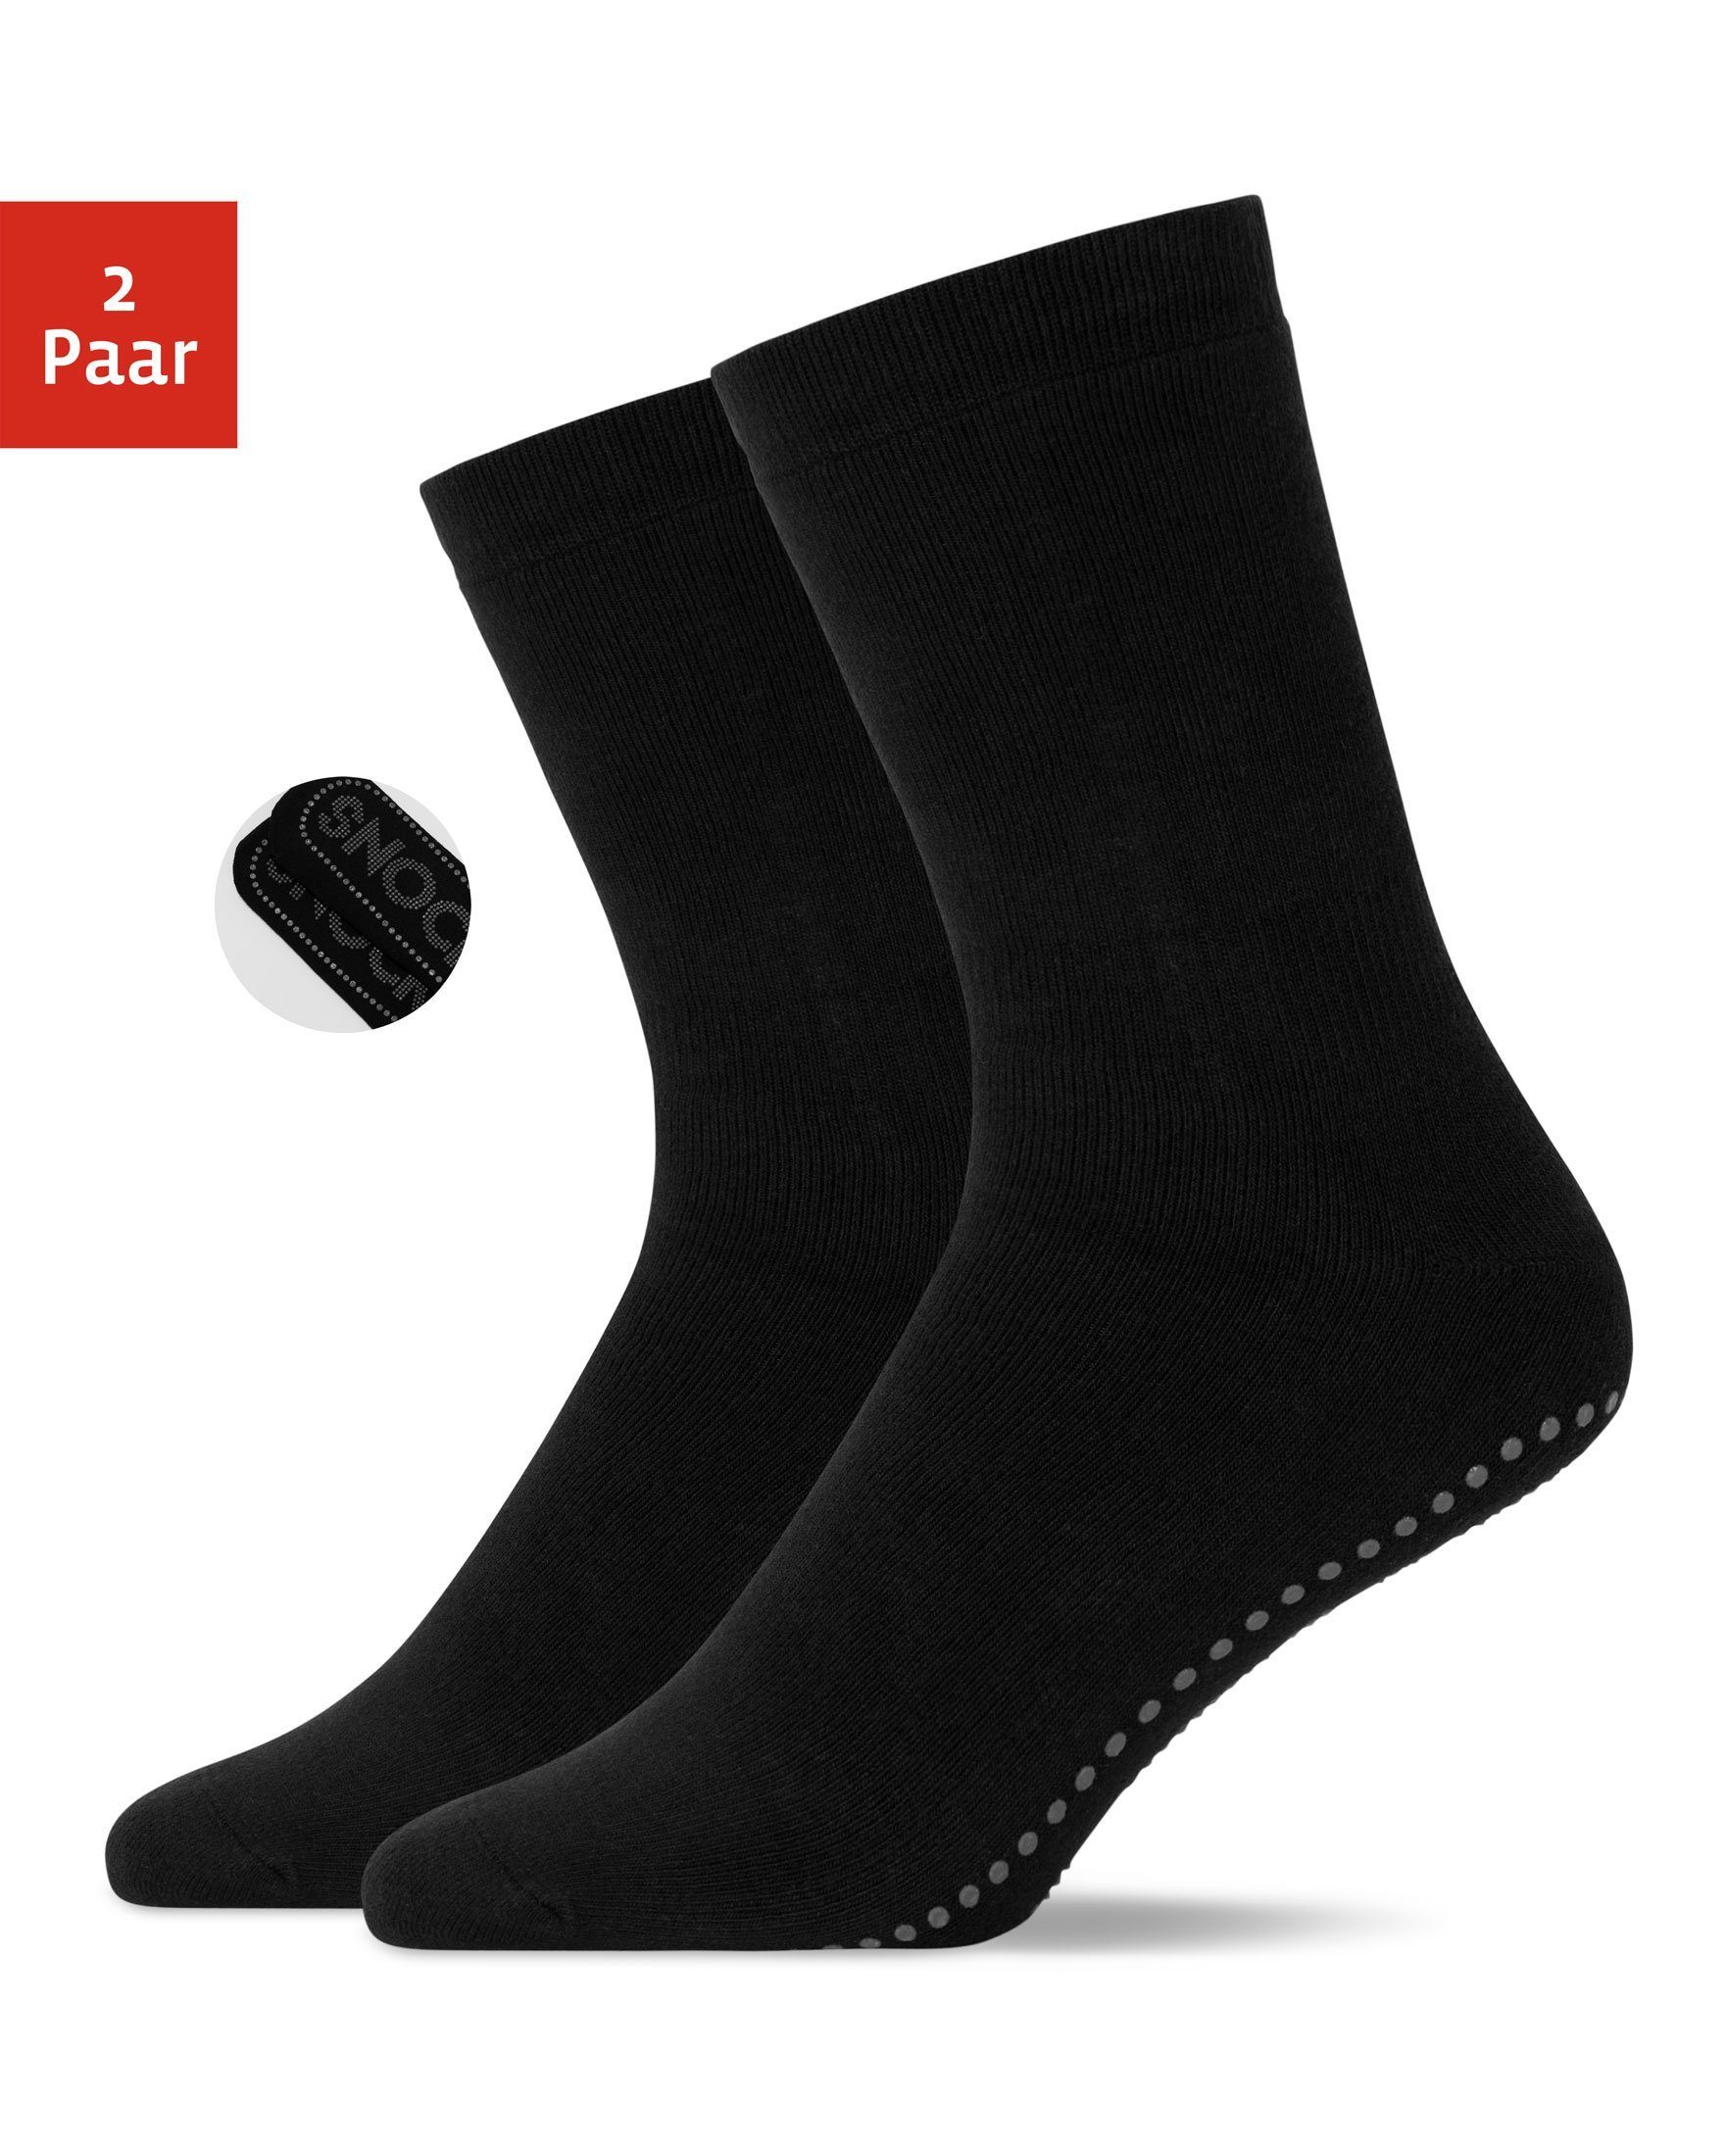 SNOCKS ABS-Socken Anti-Rutsch Socken Damen & Herren (2-Paar) aus Bio-Baumwolle, Anti-Rutsch-Noppen in süßem Design Schwarz (SNOCKS)